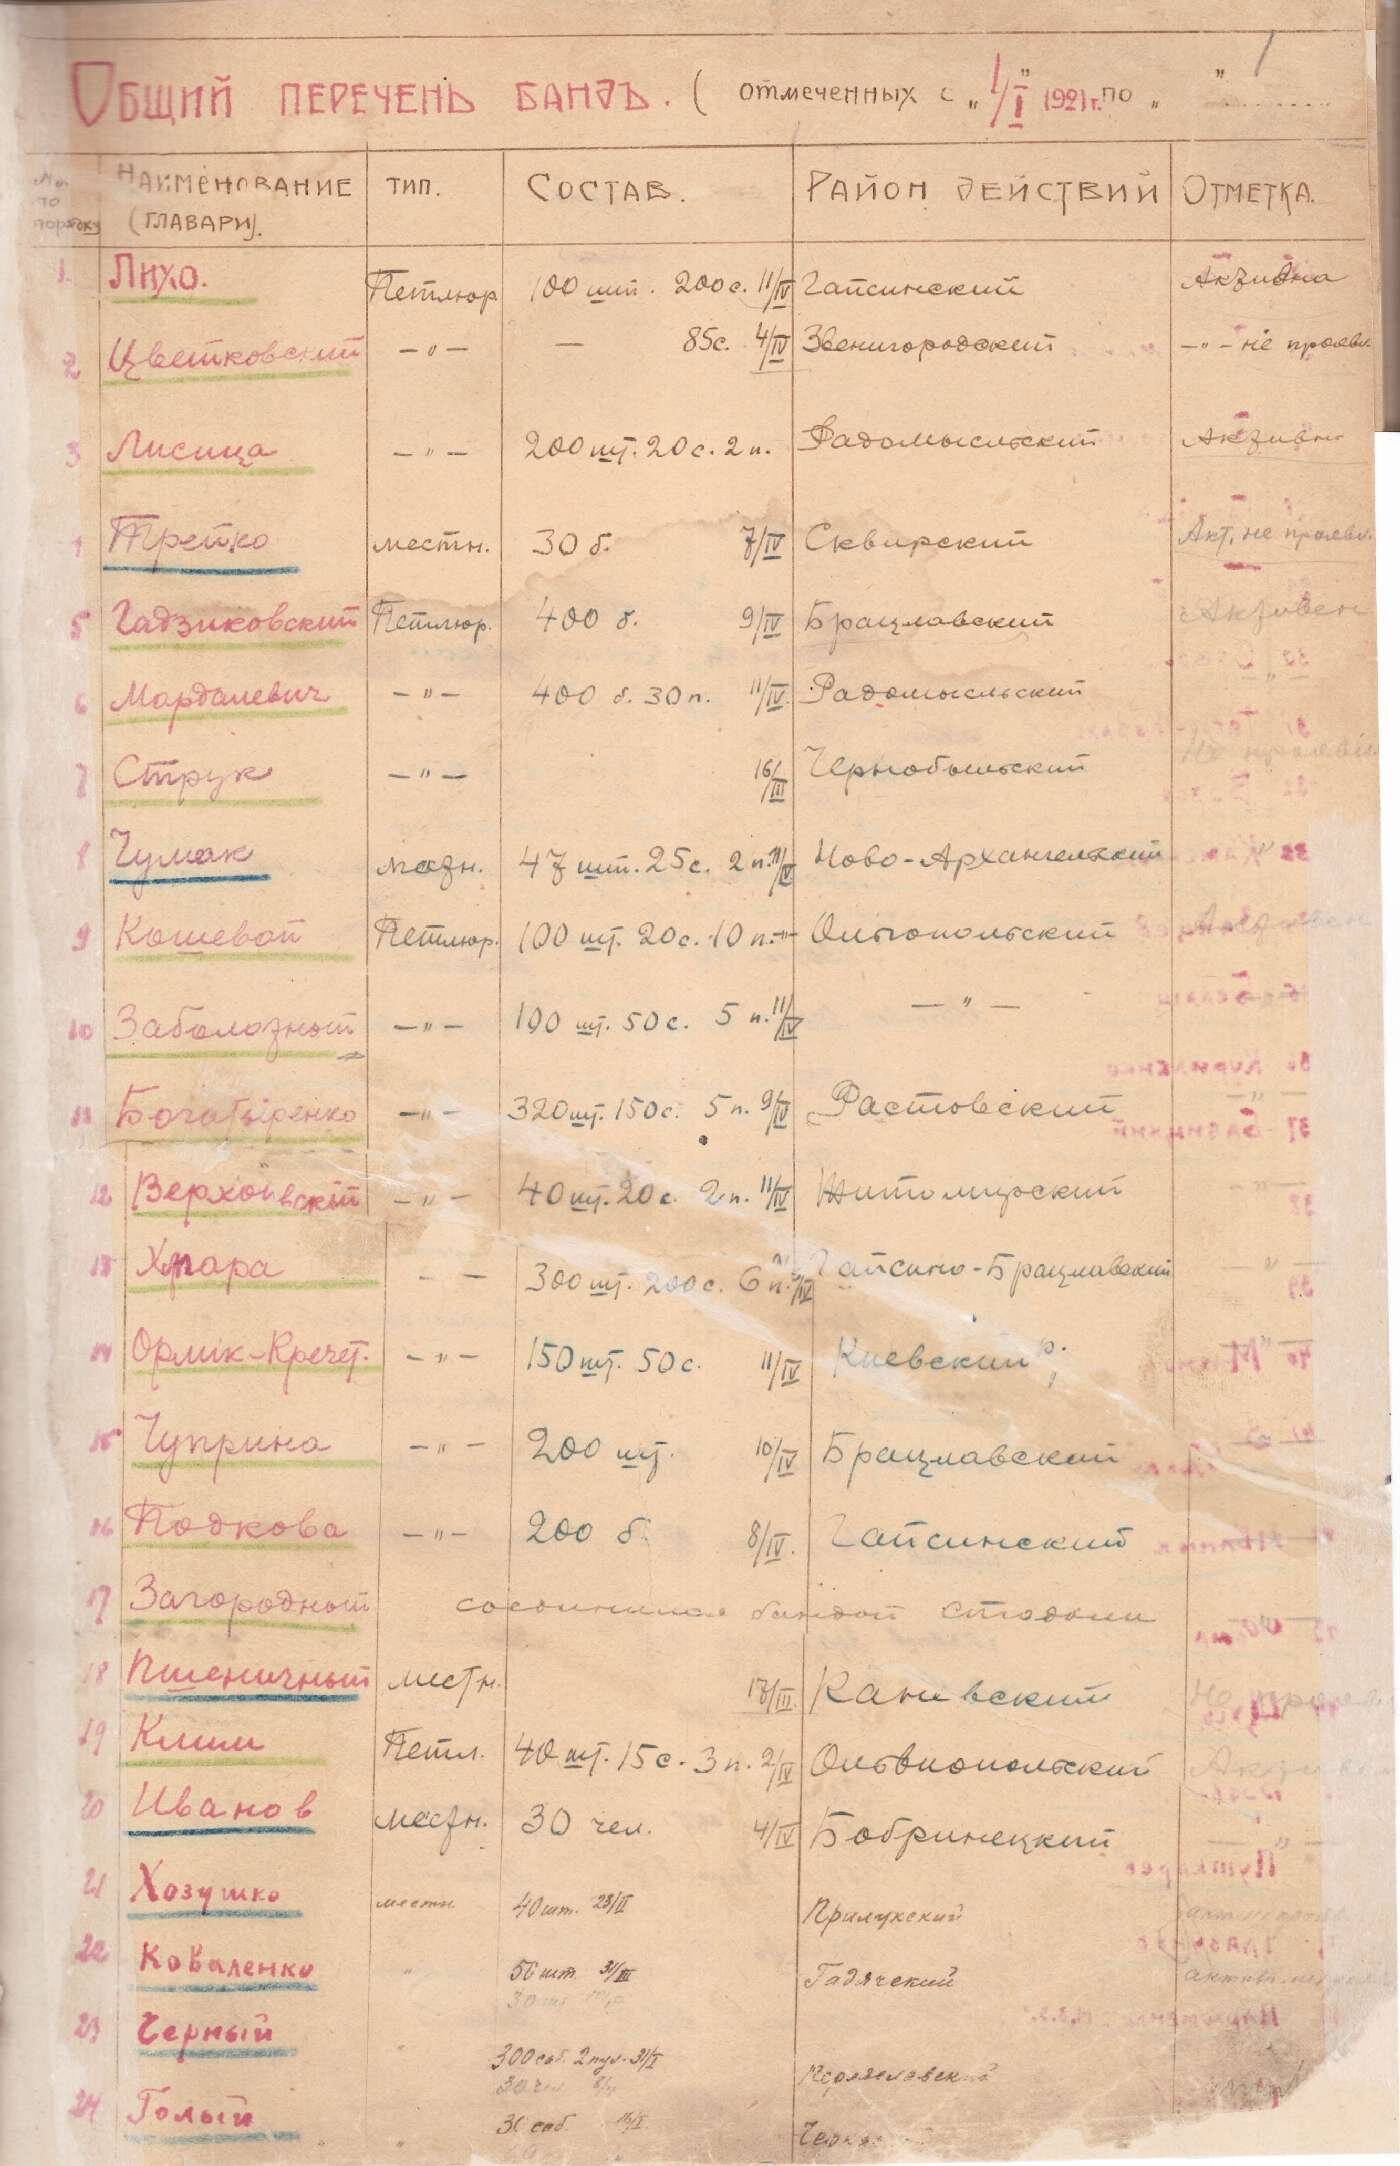 Загальний перелік повстанських загонів на території України, складений Постійною комісією по боротьбі з бандитизмом при РНК УСРР. Не раніше 15 квітня 1921 р.